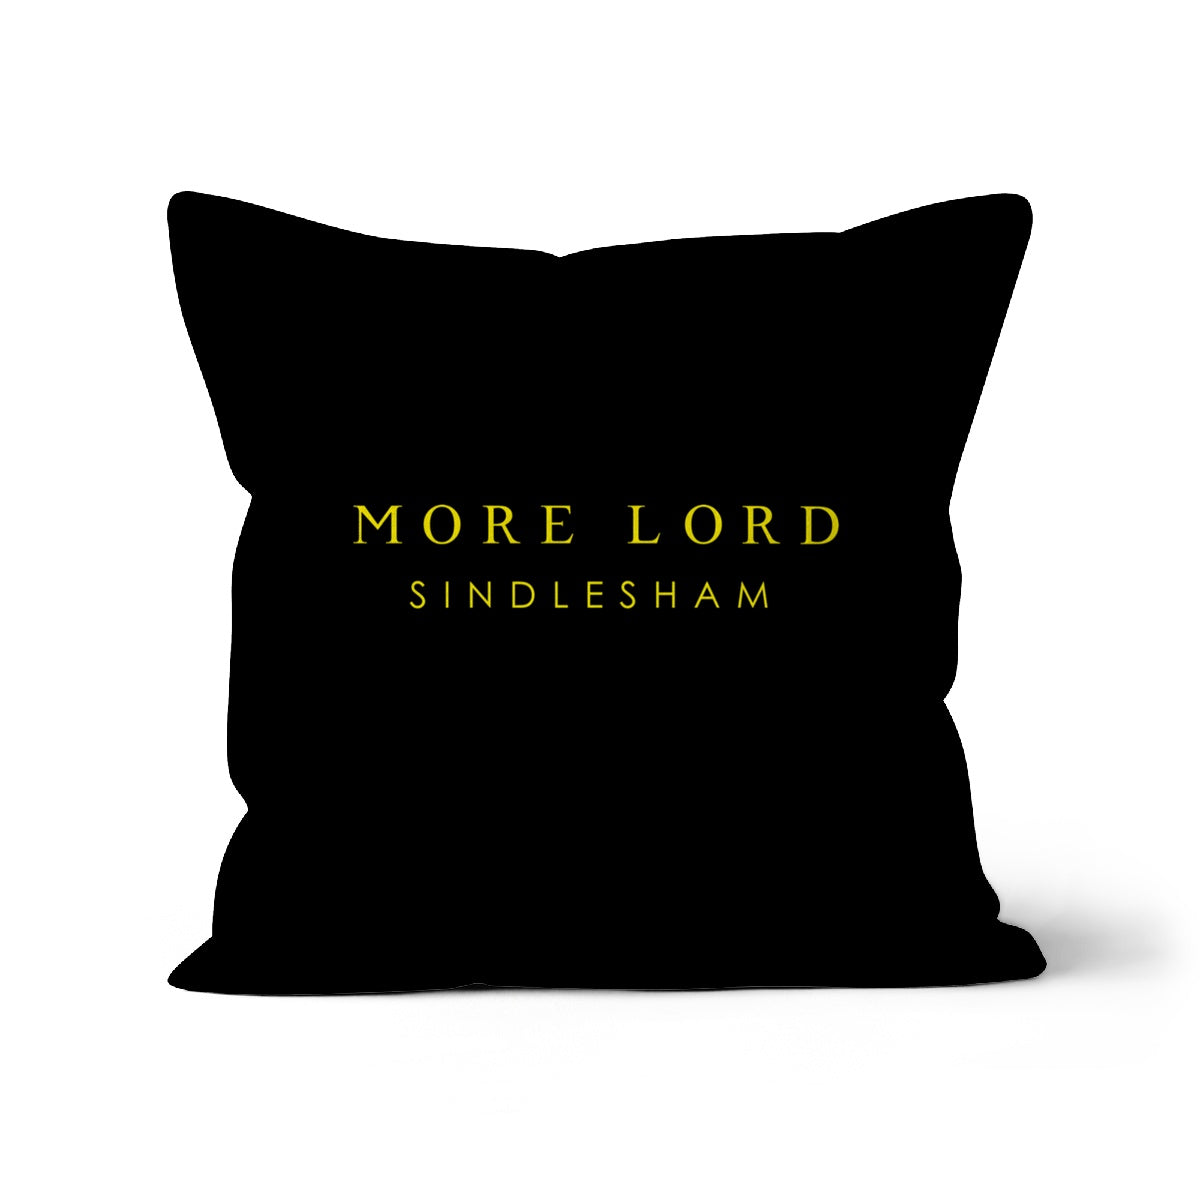 More Lord Sindlesham Cushion